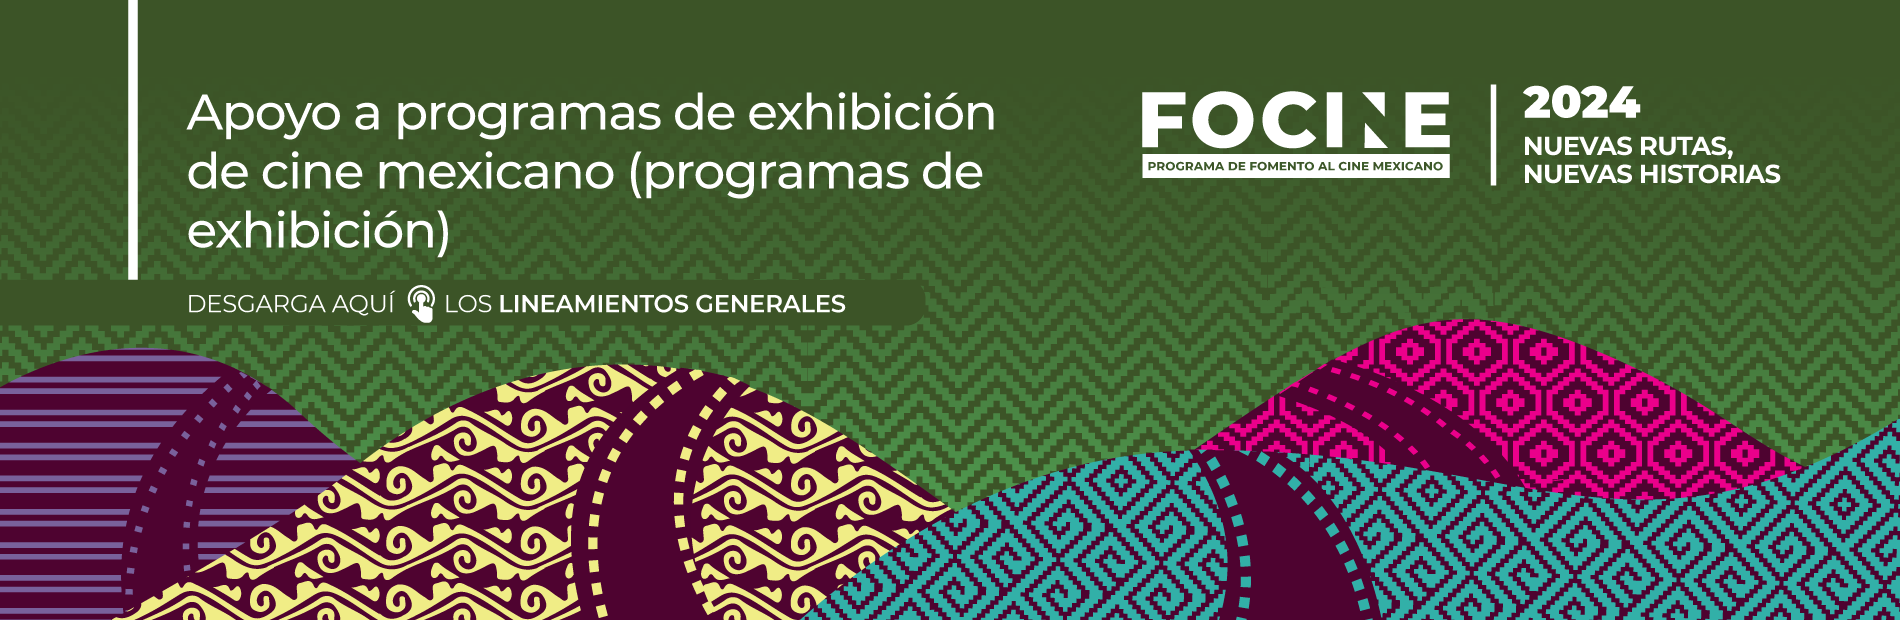 Apoyo a programas de exhibición de cine mexicano (Programas de exhibición).